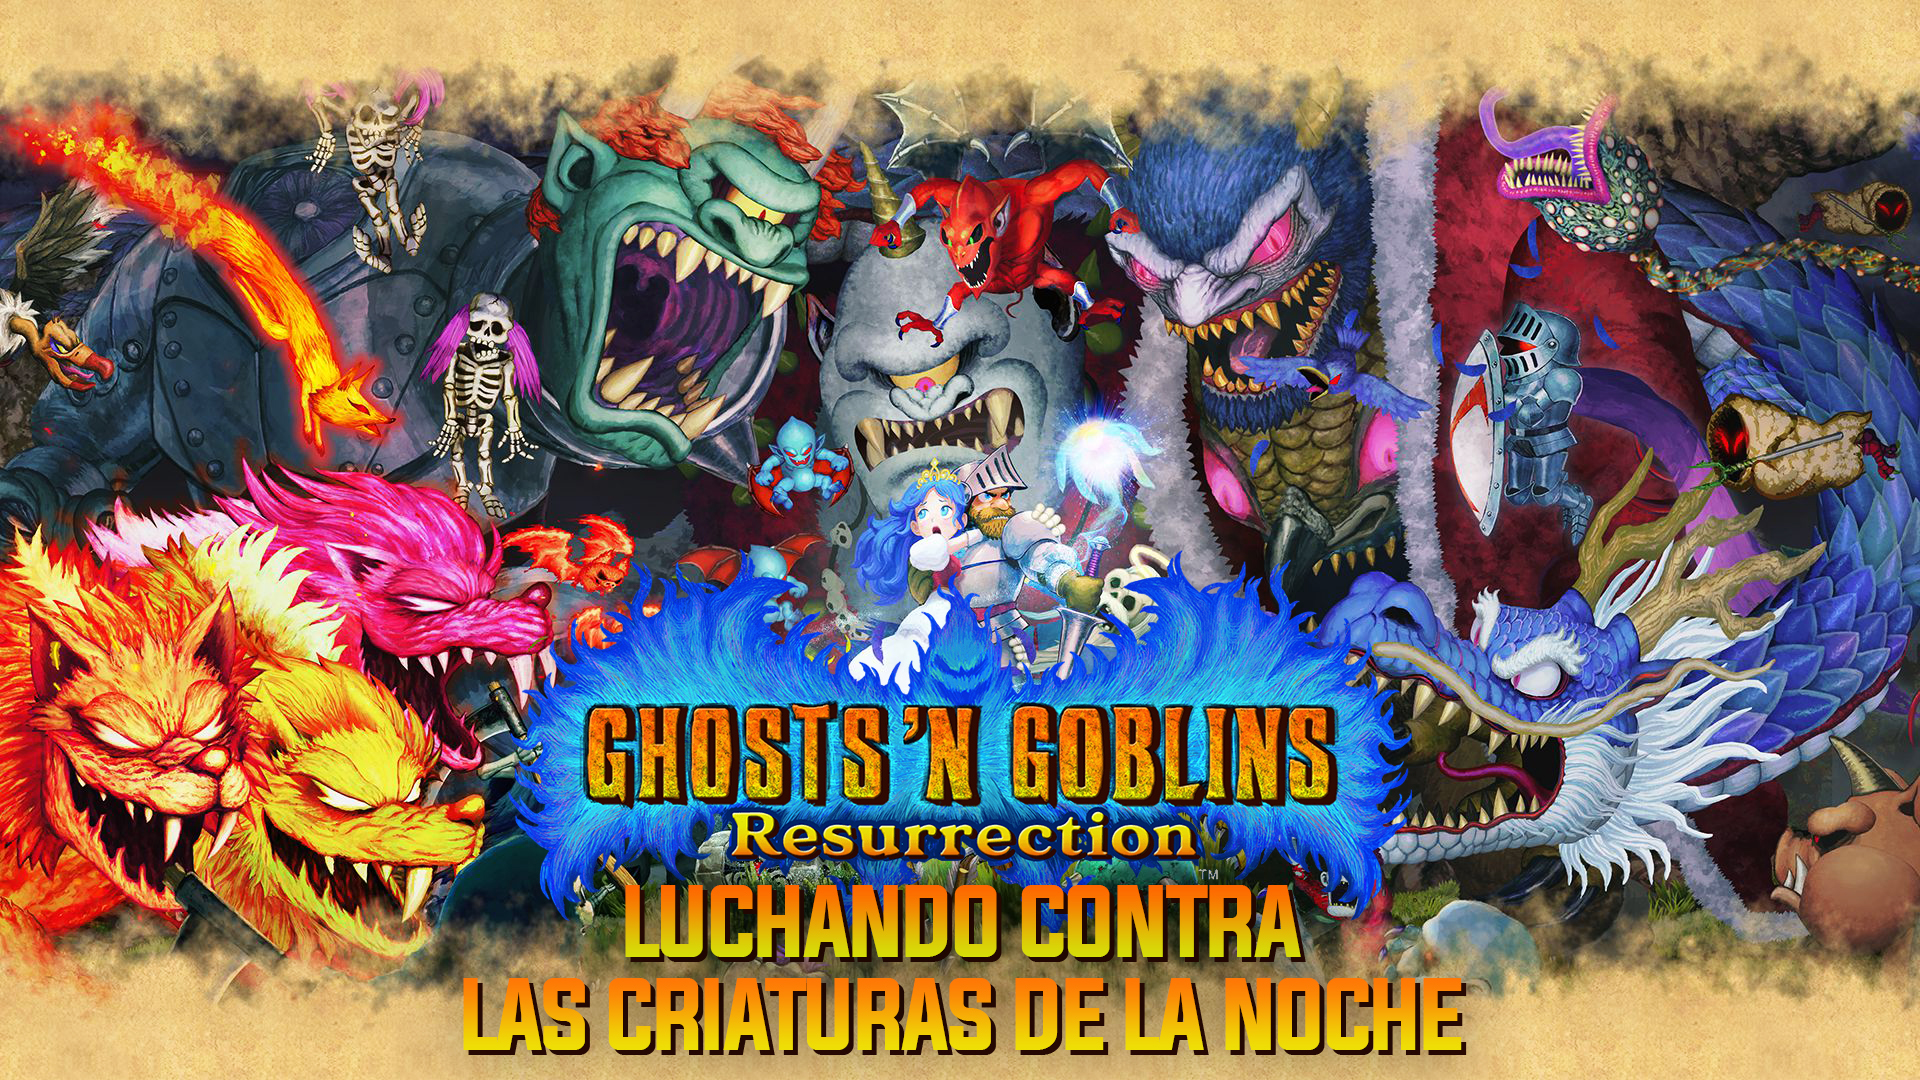 Ghosts ‘n Goblins Resurrection – Luchando Contra las Criaturas de la Noche